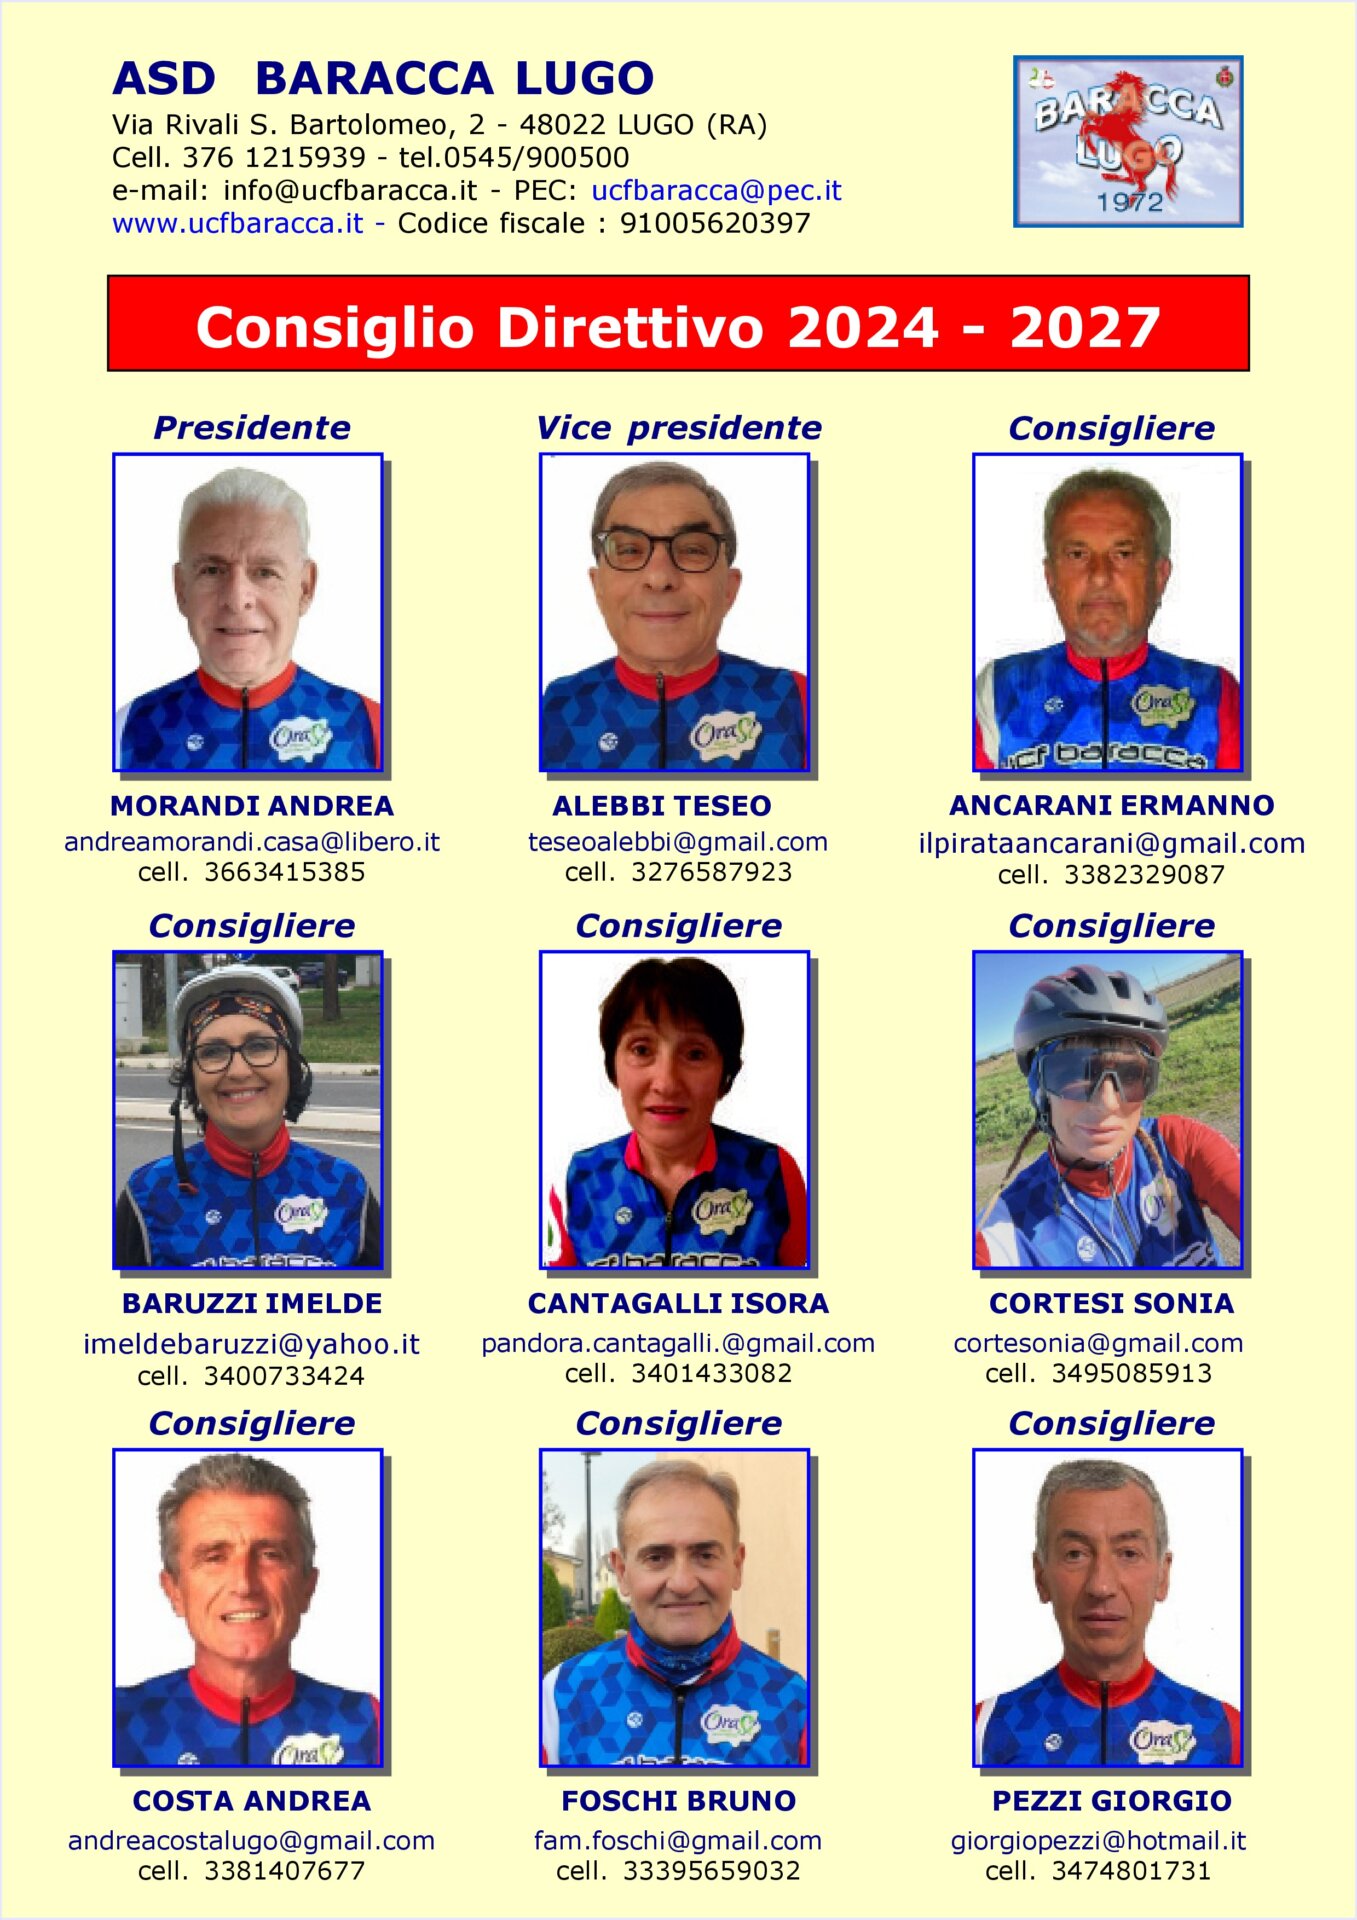 Consiglio direttivo 2017 -2018